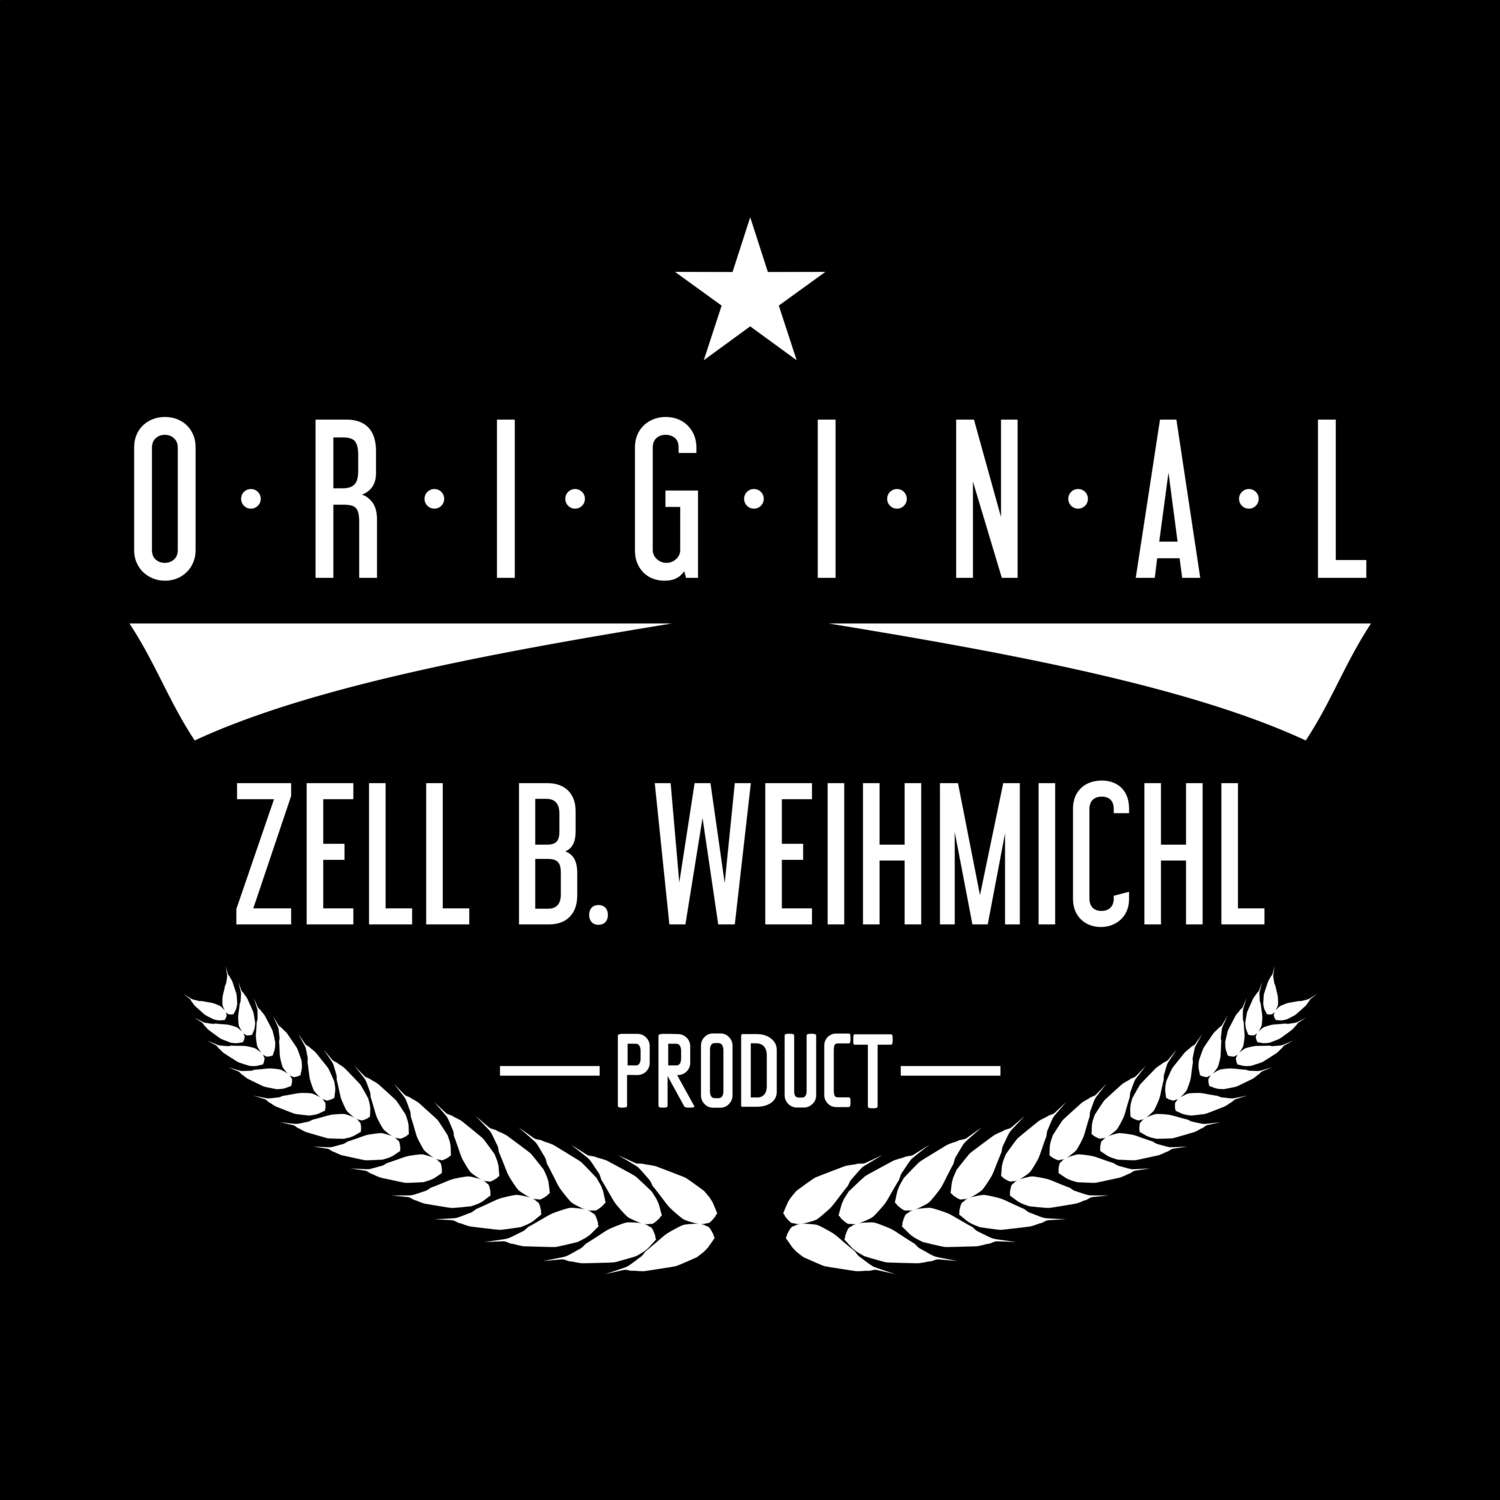 Zell b. Weihmichl T-Shirt »Original Product«